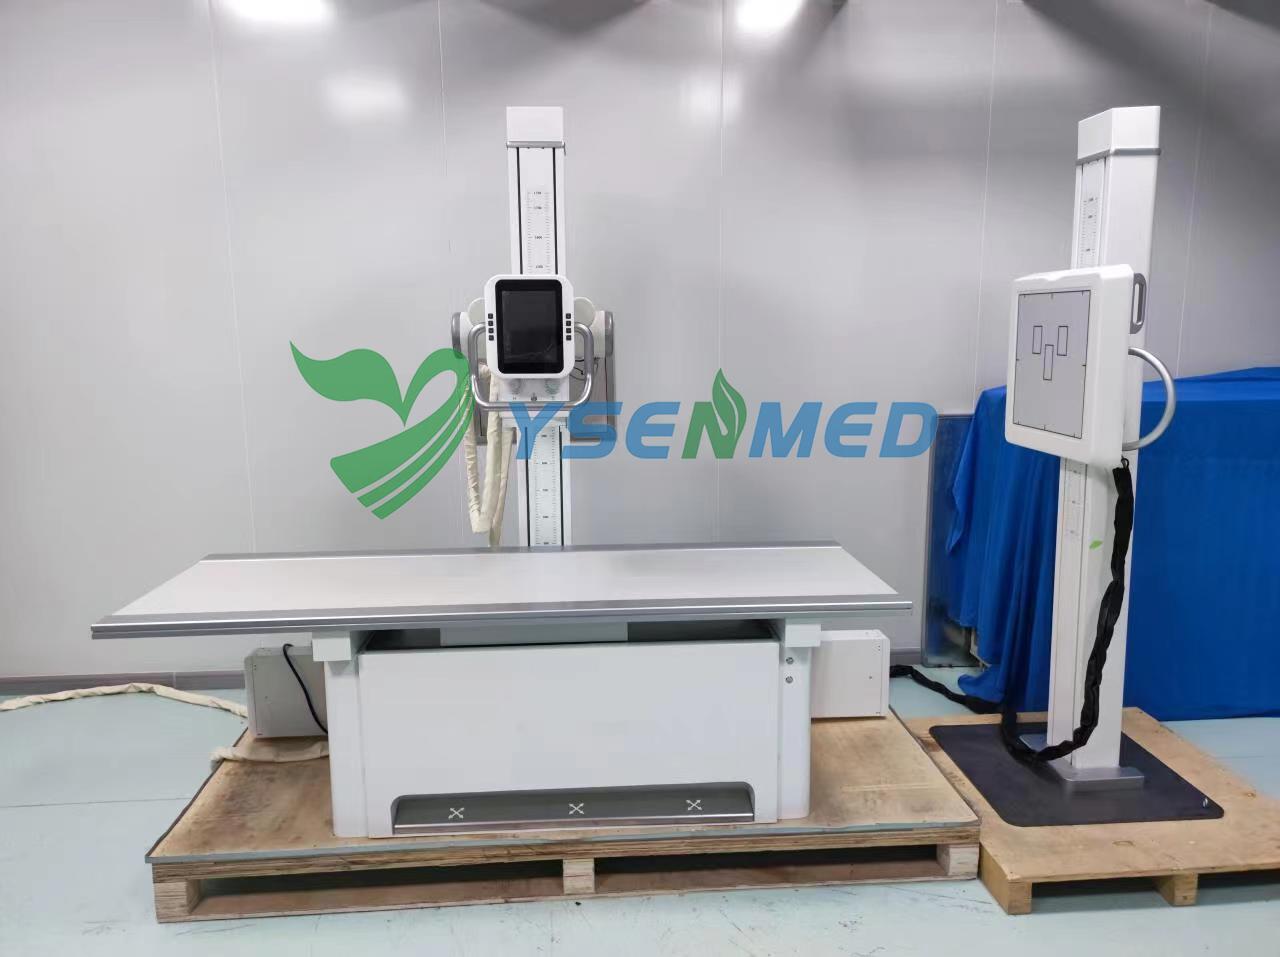 Le système de radiographie numérique YSENMED 50kW 500mA YSX-iDR50 arrive dans un hôpital en Tanzanie.